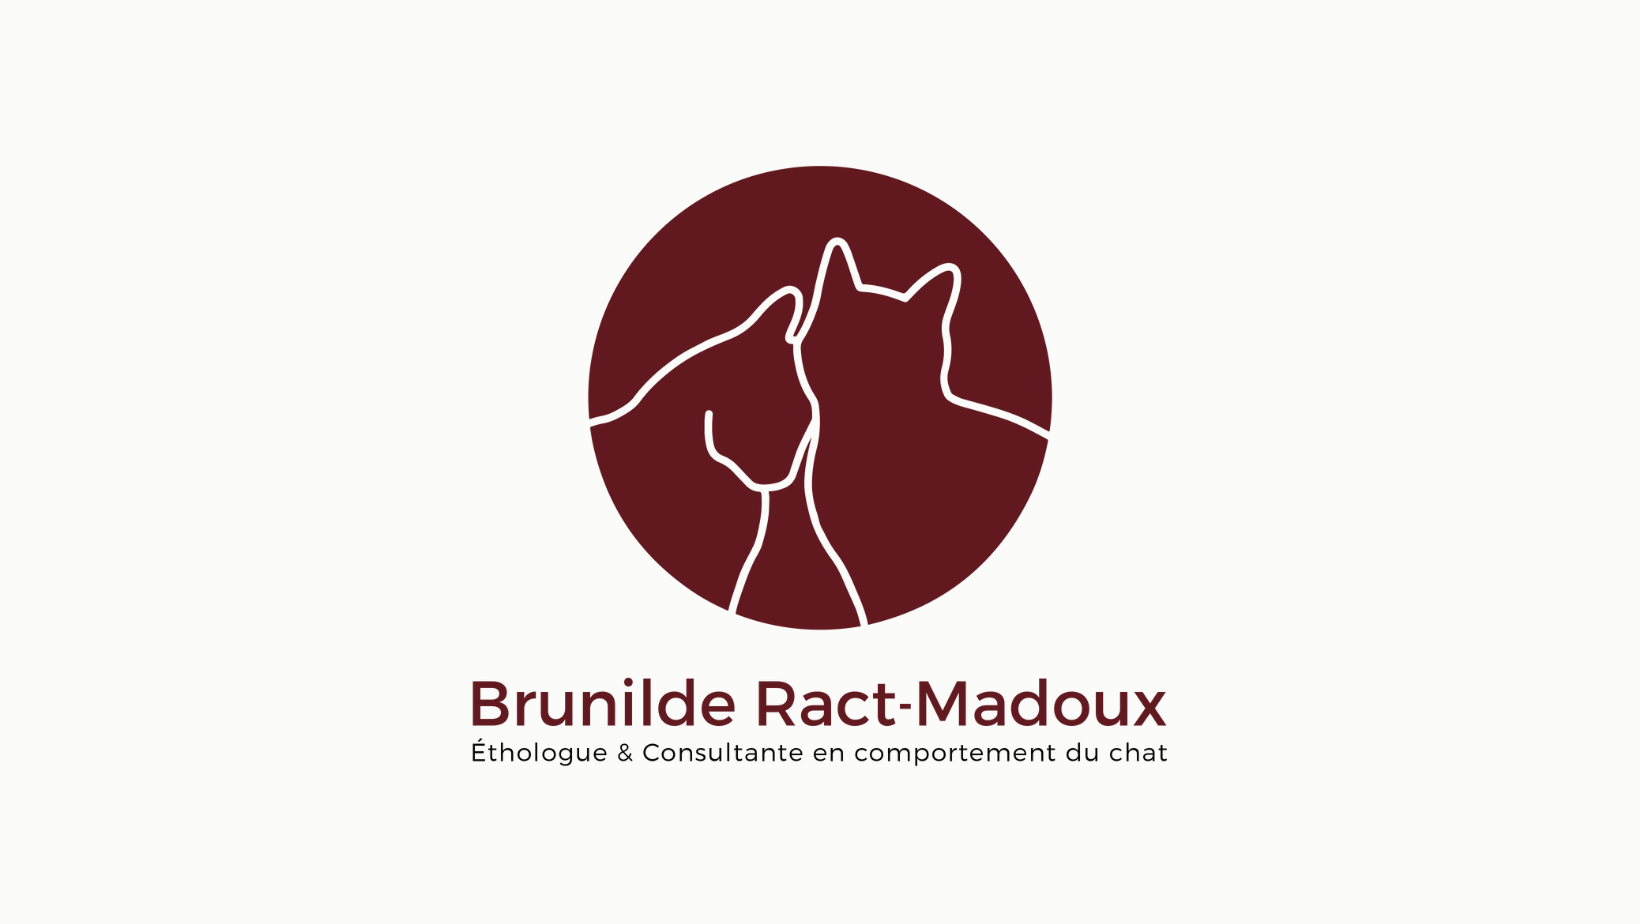 Éthologue et Consultante en comportement du chat (Brunilde Ract-Madoux)